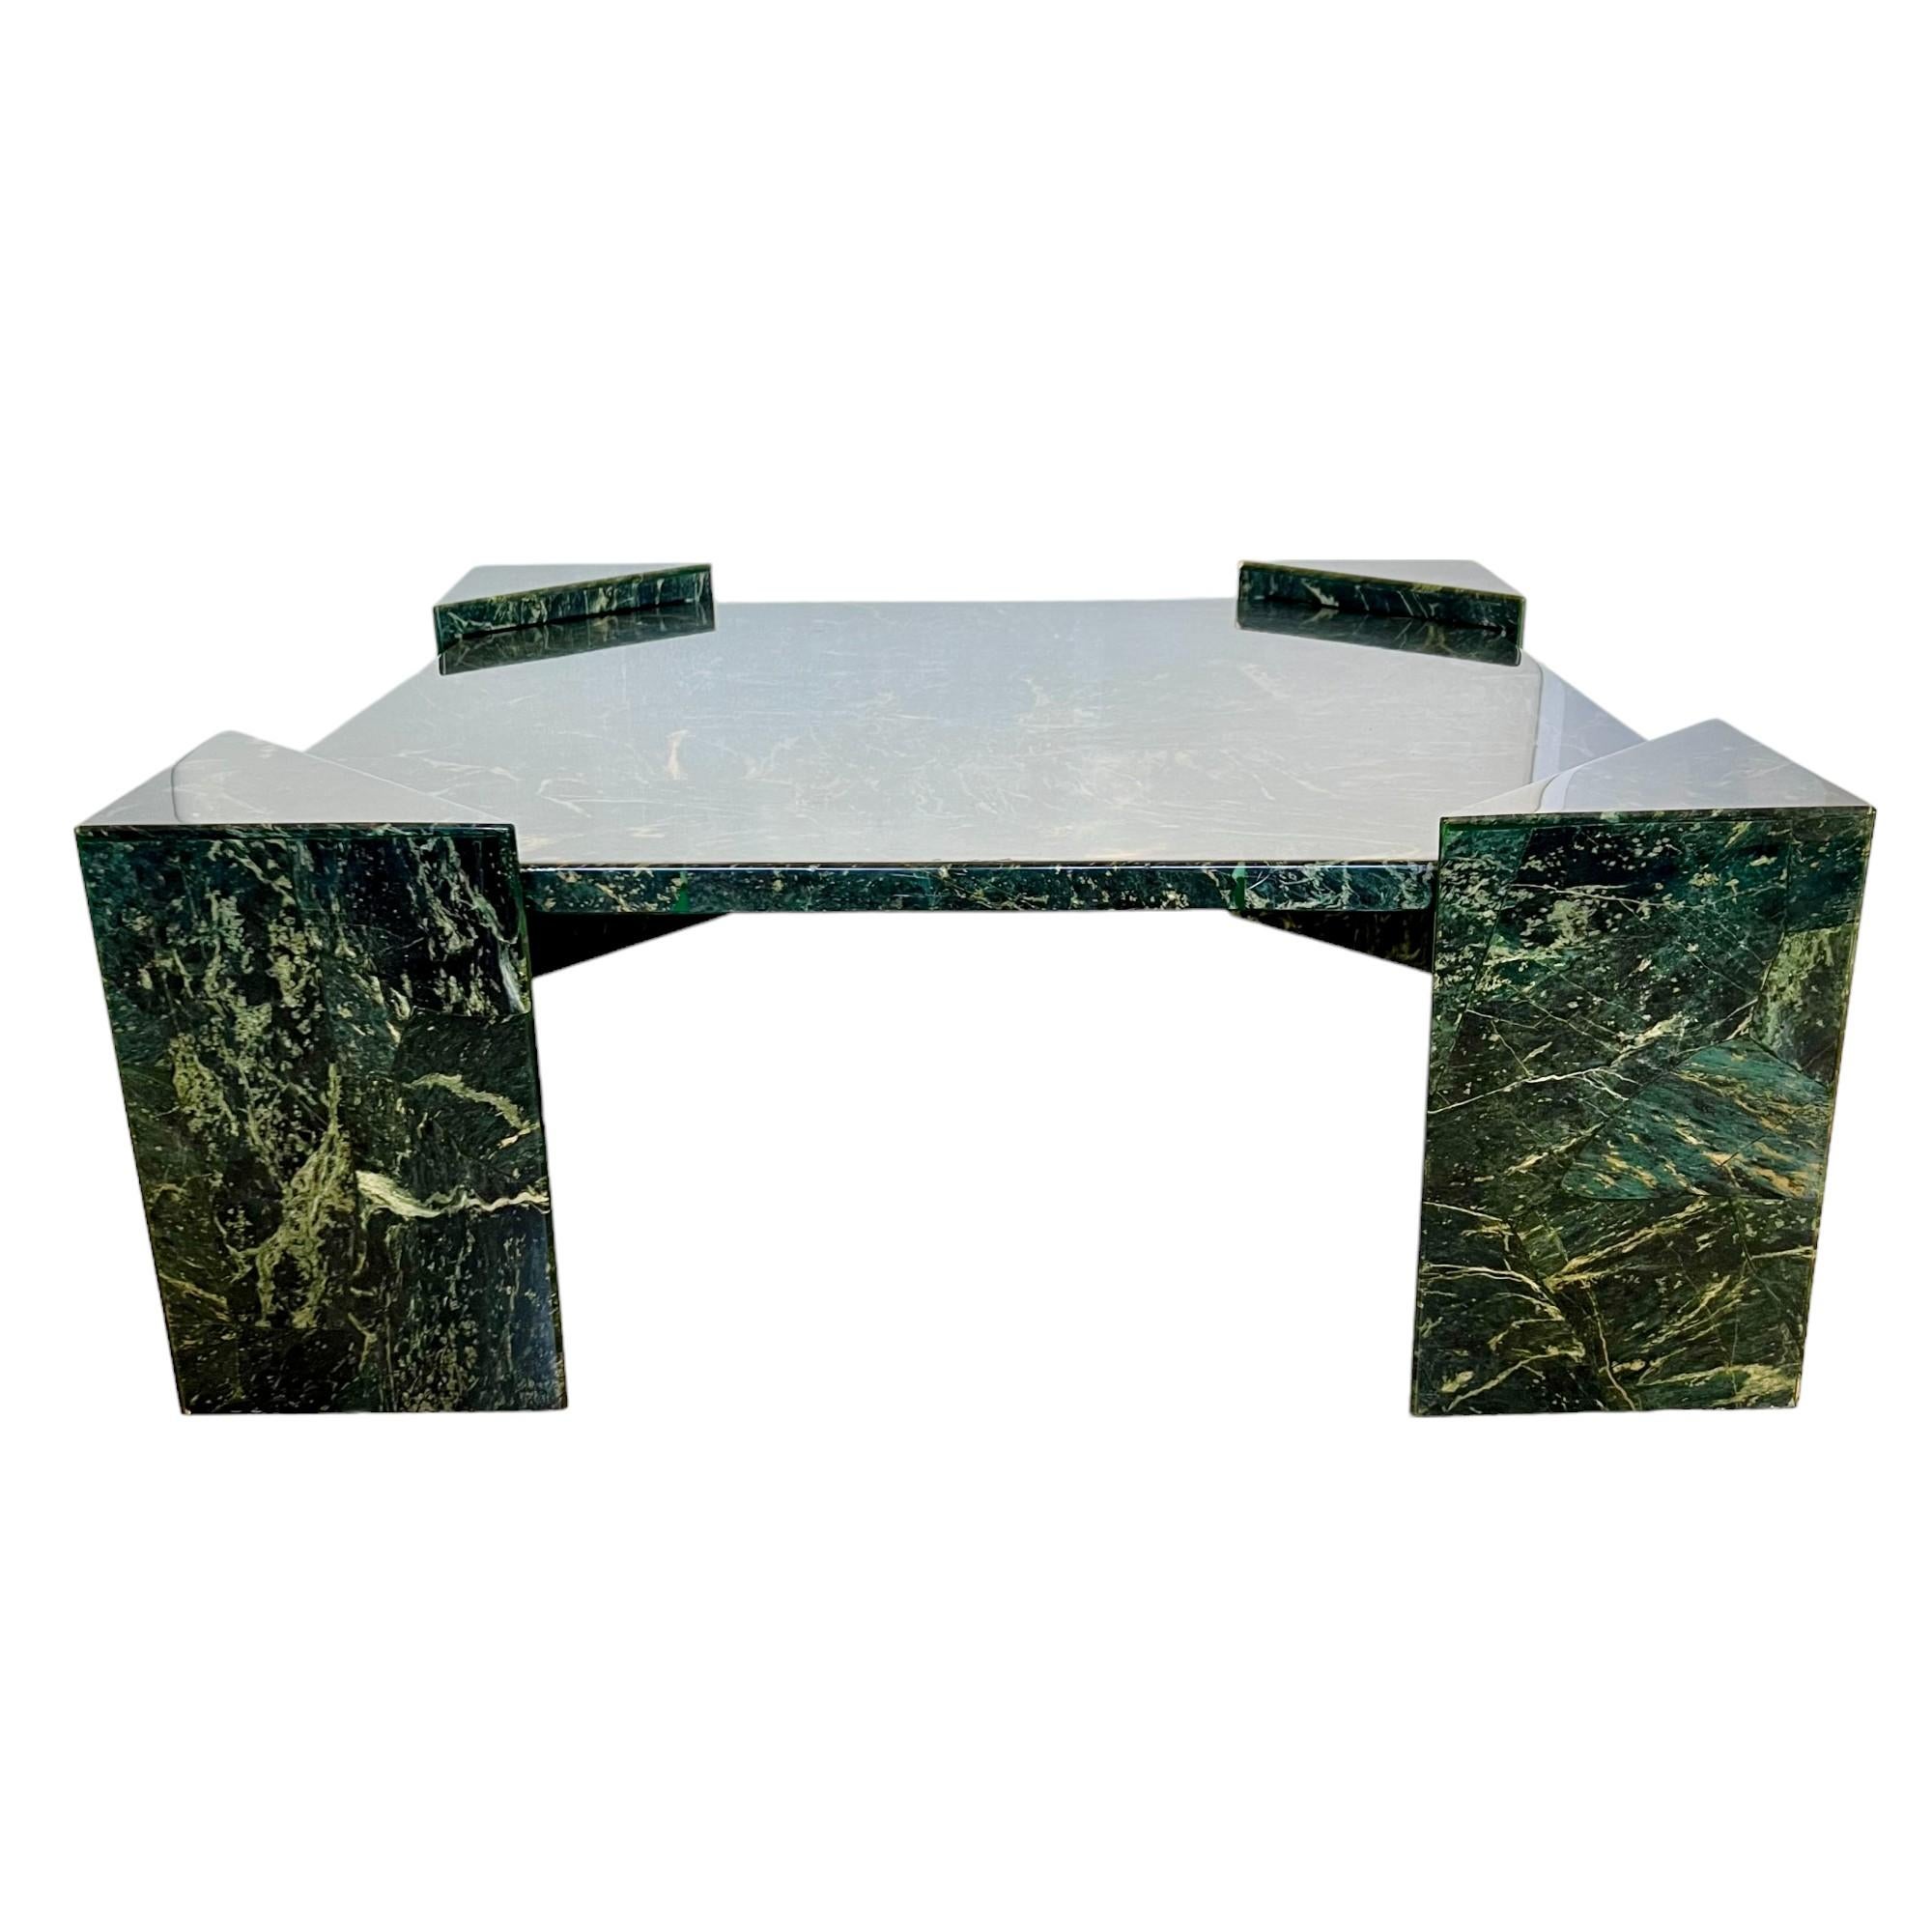 Cette table de cocktail ou table basse en composite faux marbre de style moderniste des années 1980 a été habilement fabriquée à la main en fibre de verre et a reçu une finition en gel coat vert à effet marbre avec des veines dans des teintes de